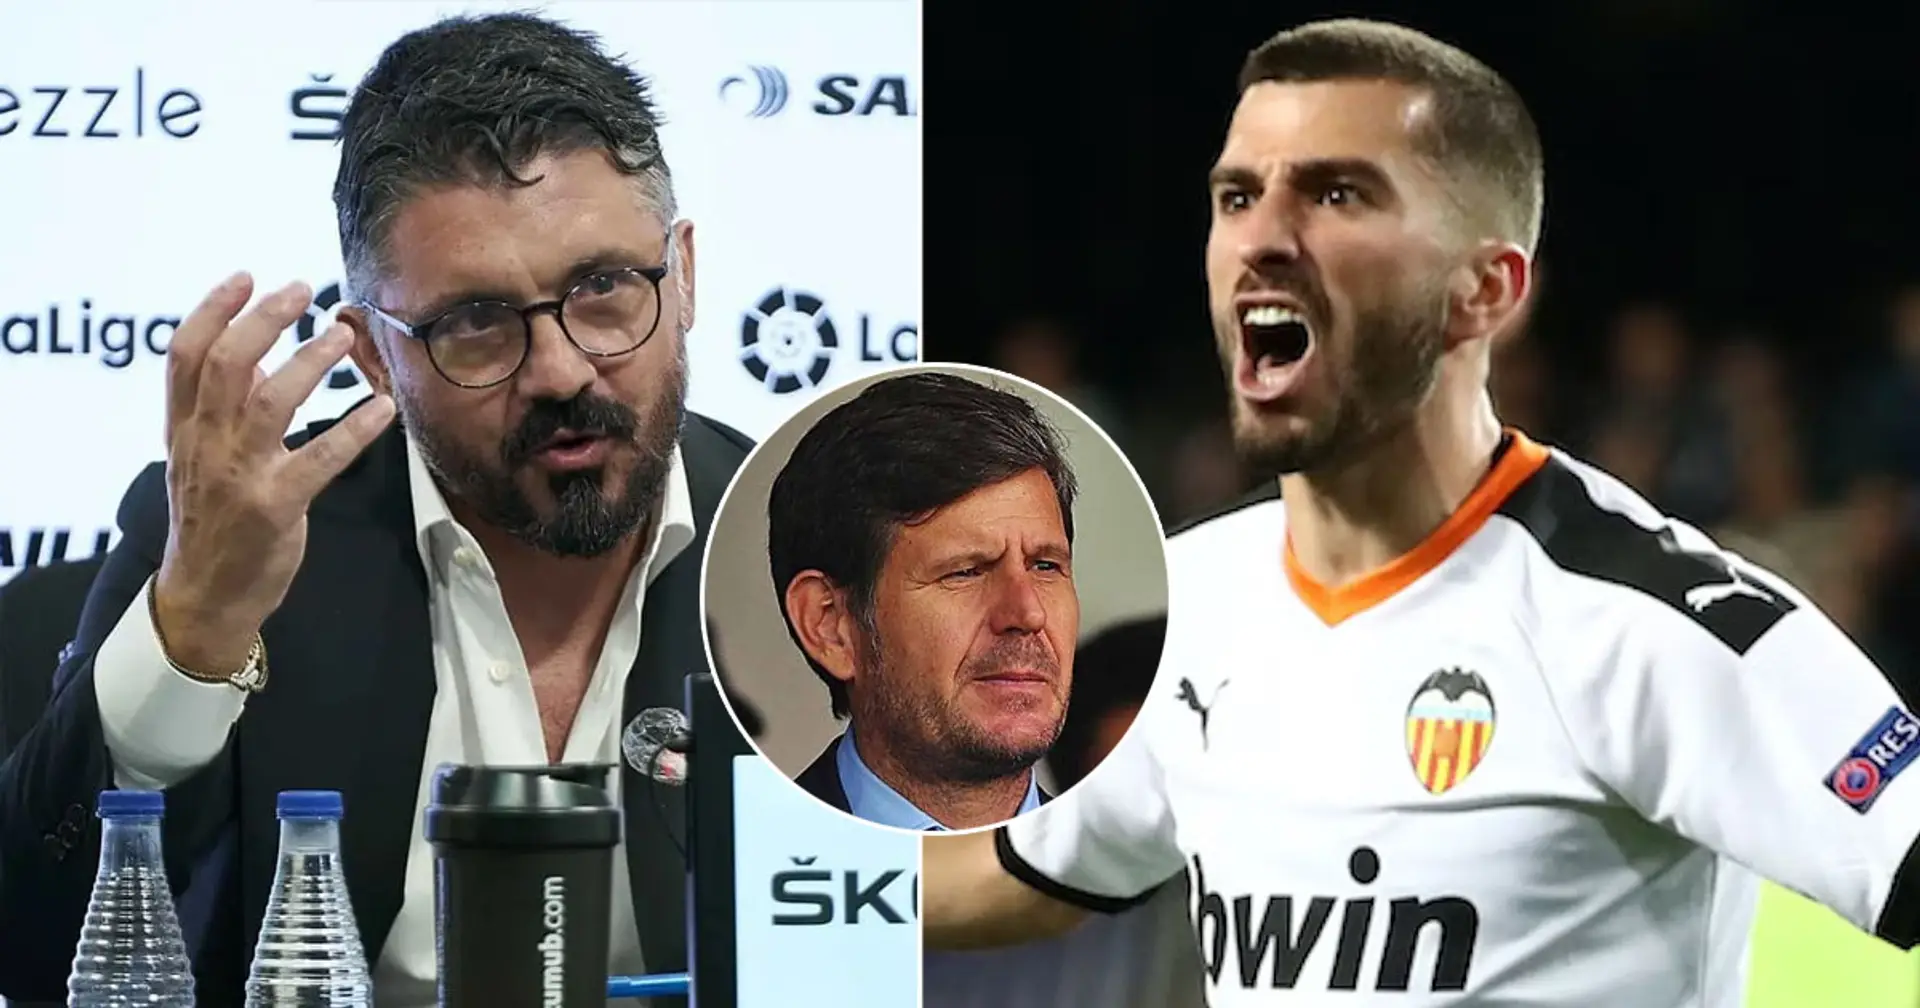 Valencia coach Gattuso expects Gaya to extend contract despite Barca interest